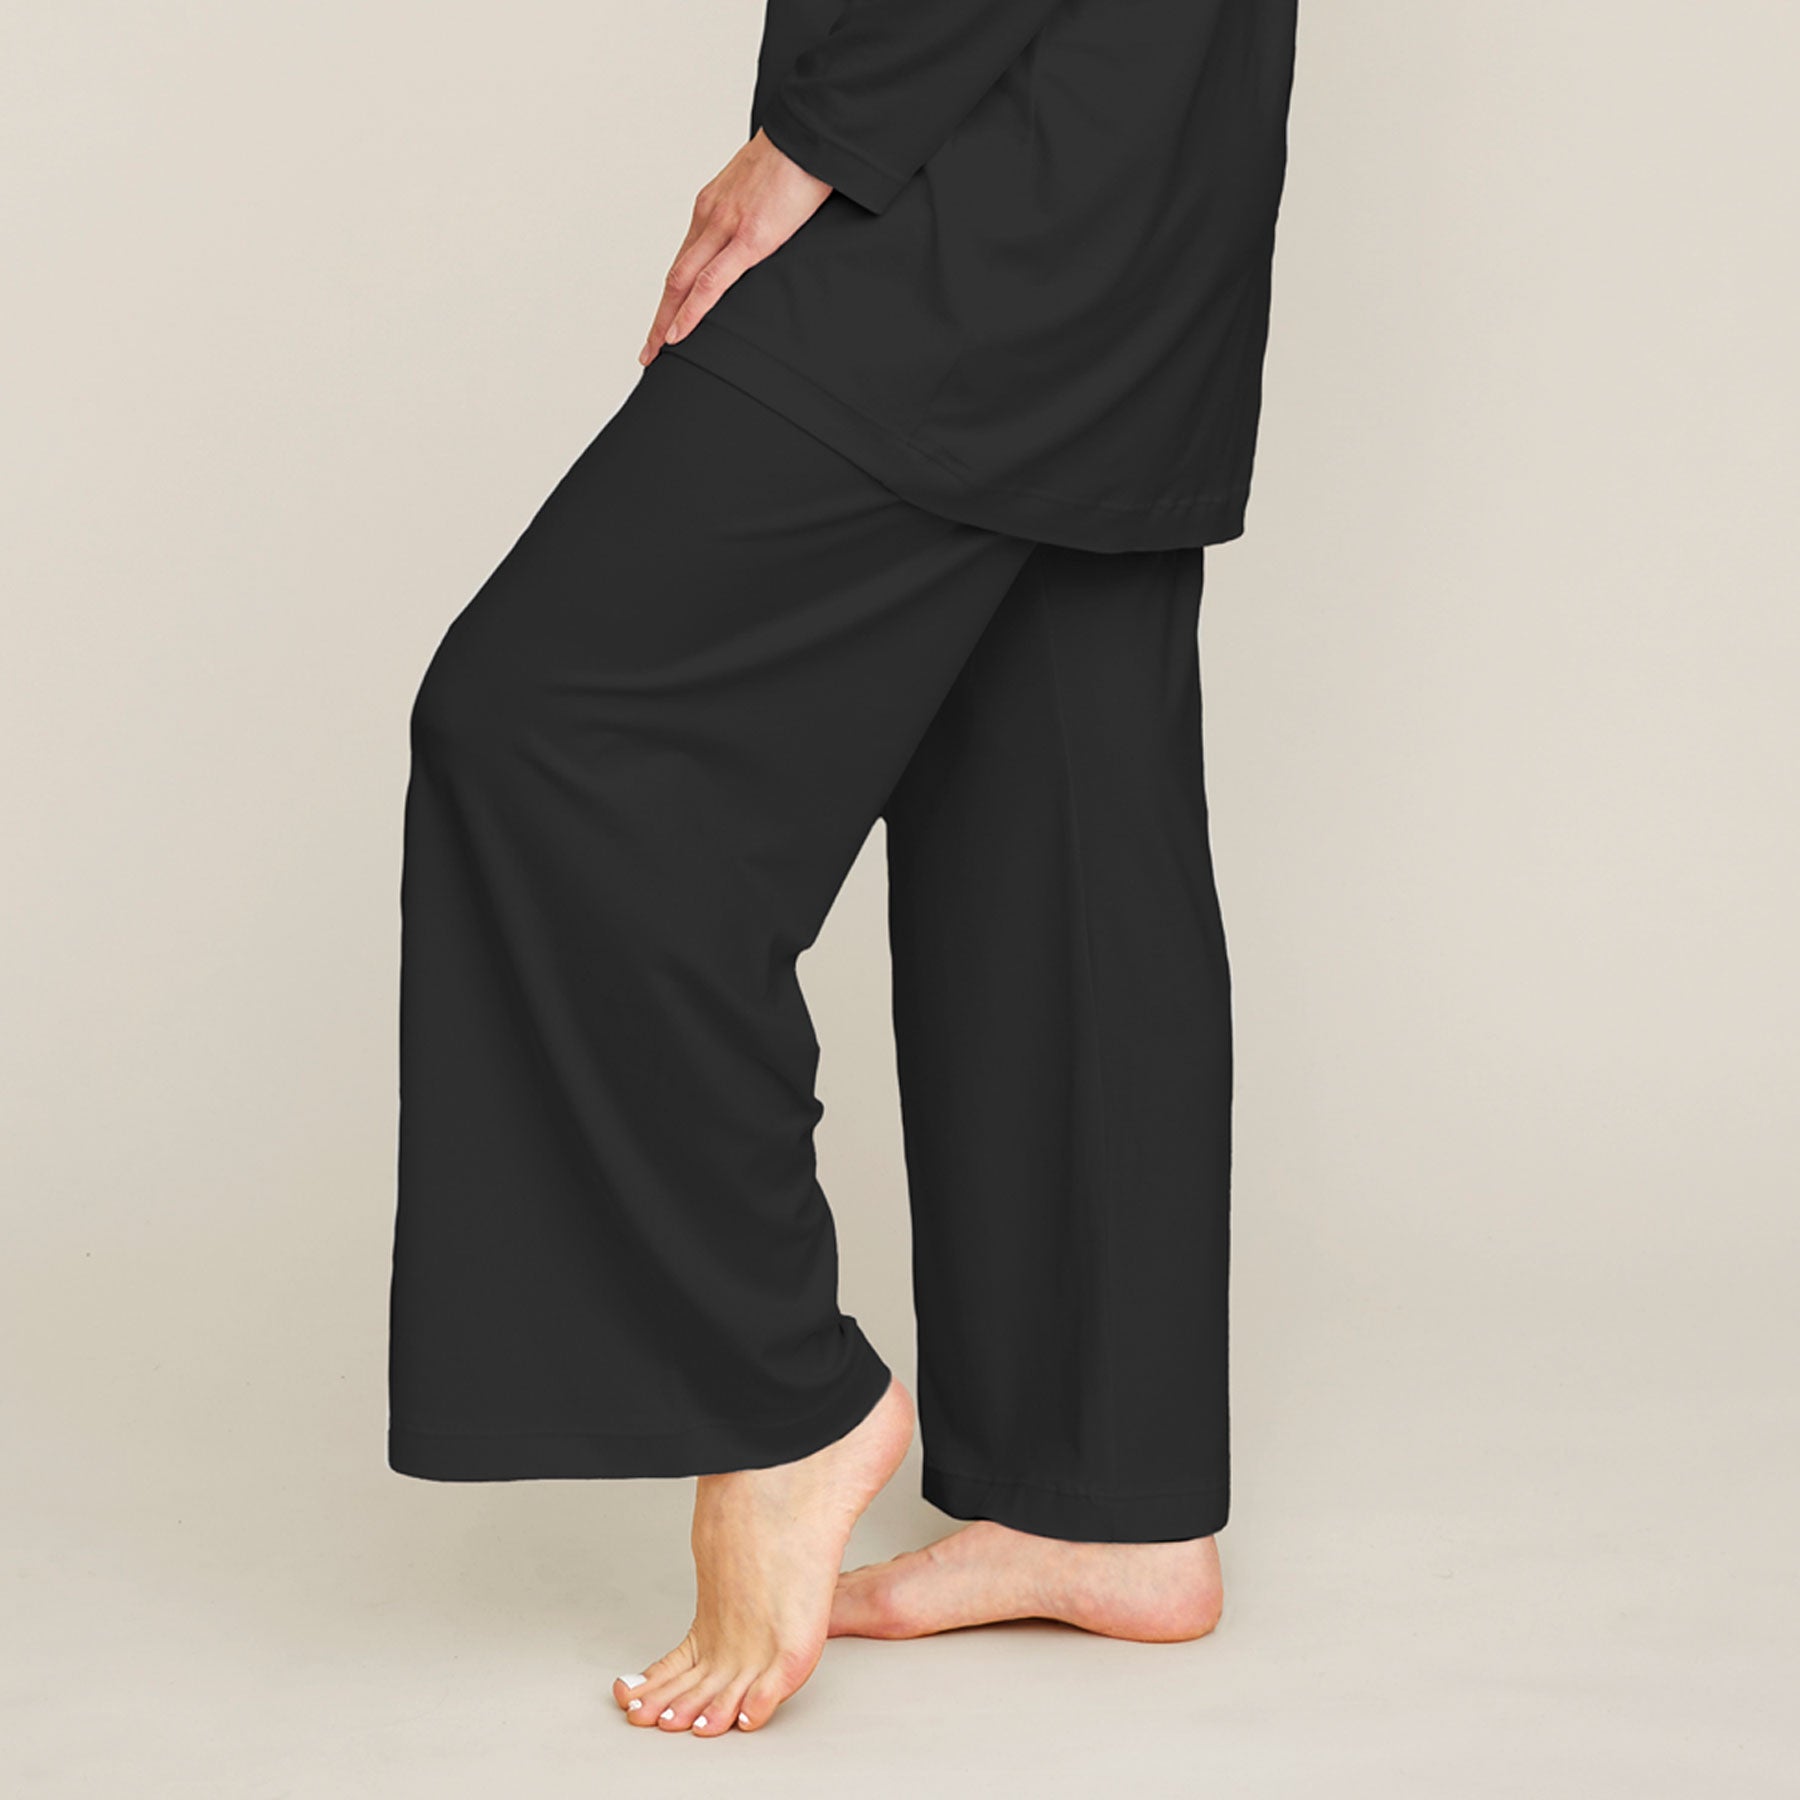 Lähikuva mustista pyjamahousuista. Housut ovat malliltansa väljät ja lahkeet ovat leveät.